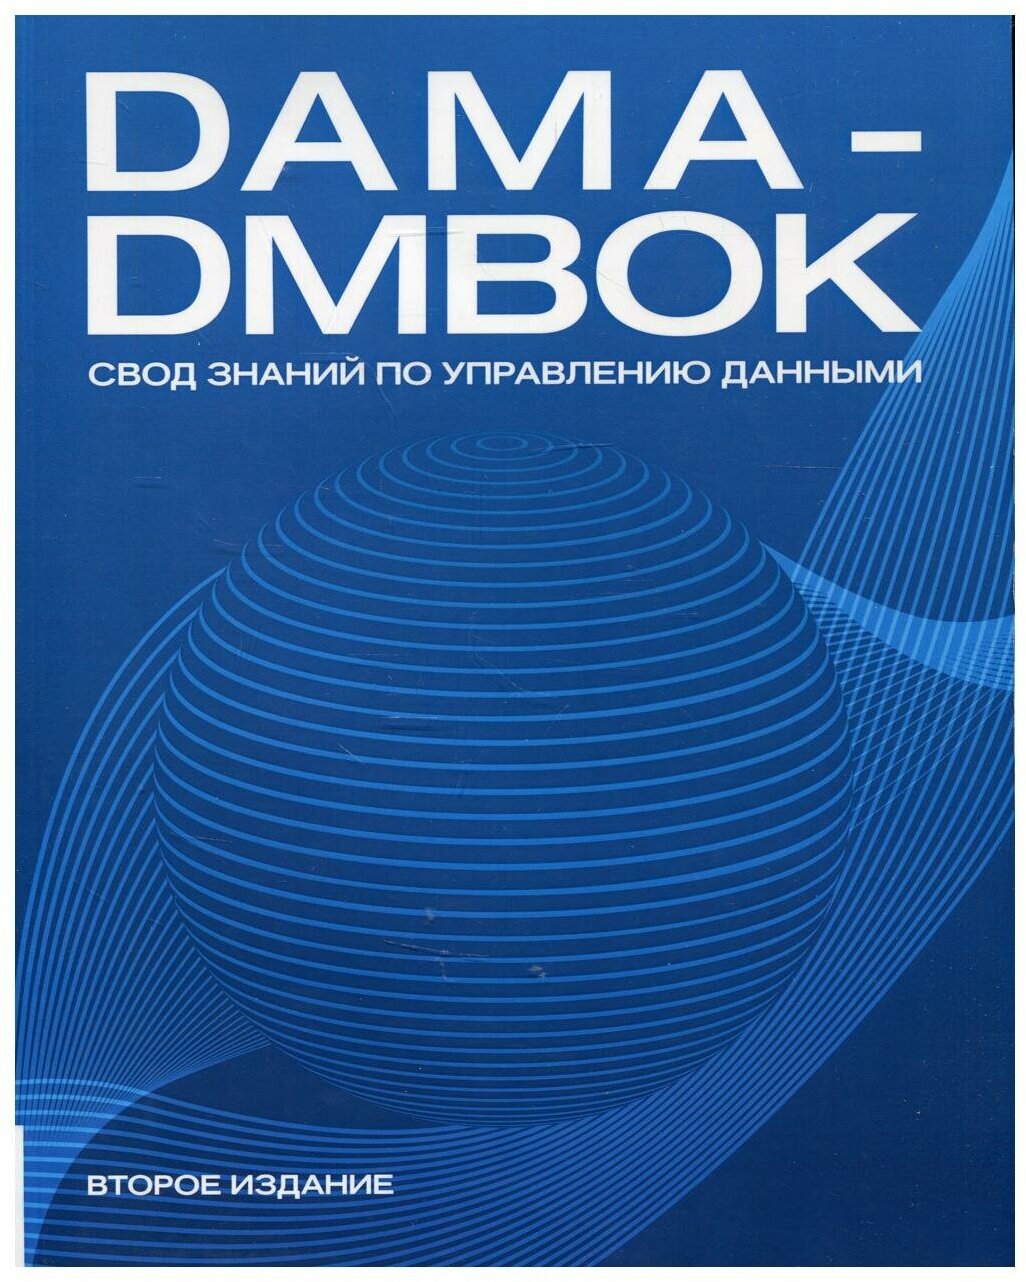 DAMA-DMBOK: Свод знаний по управлению данными - фото №1